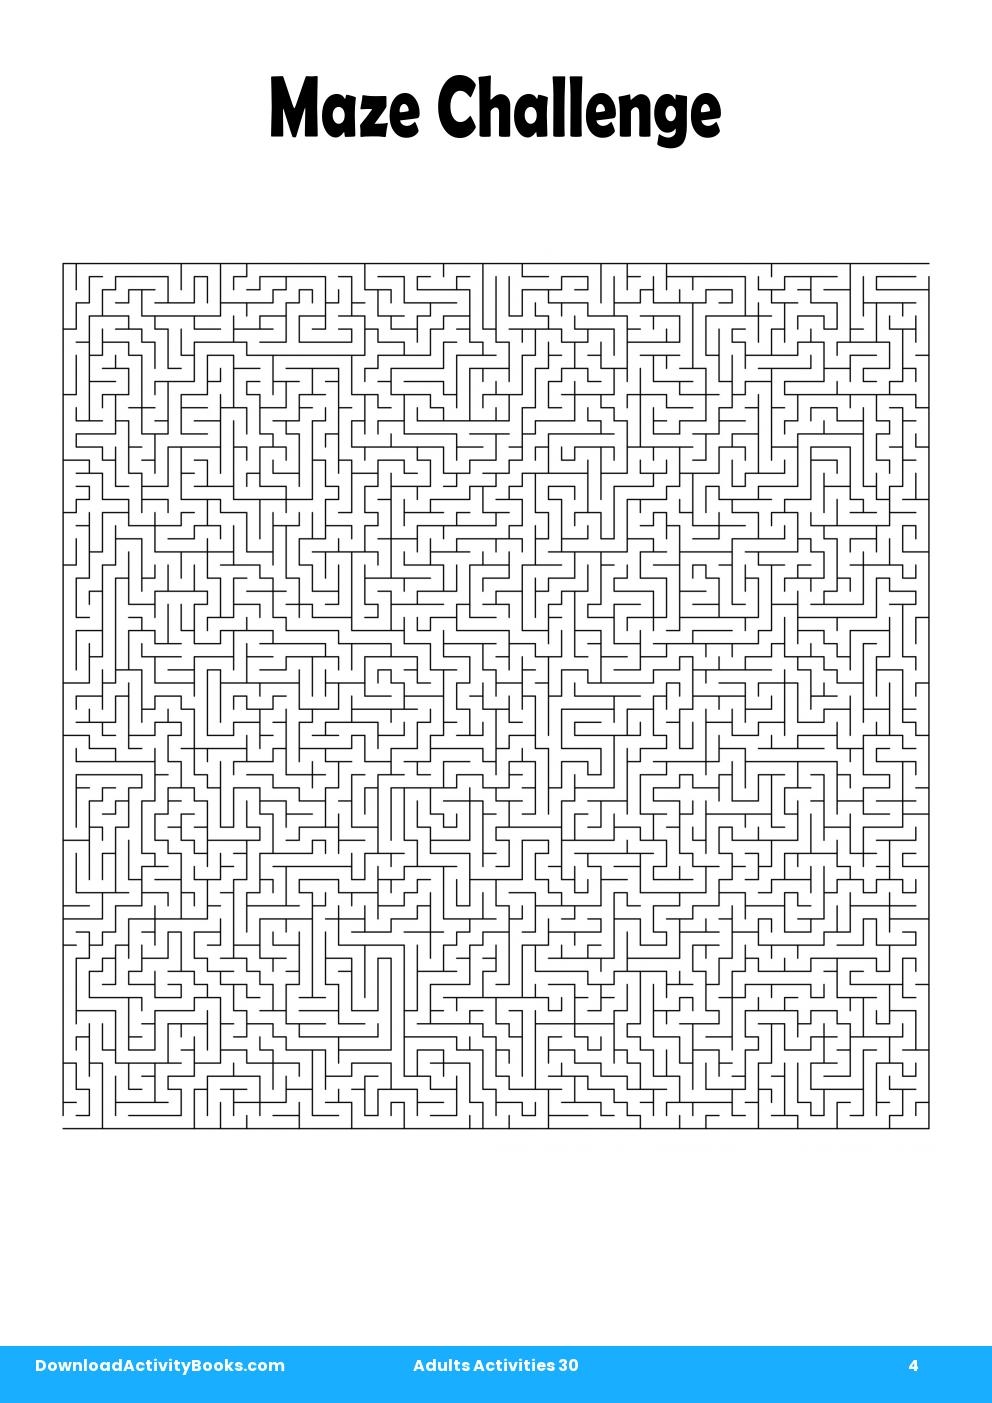 Maze Challenge in Adults Activities 30